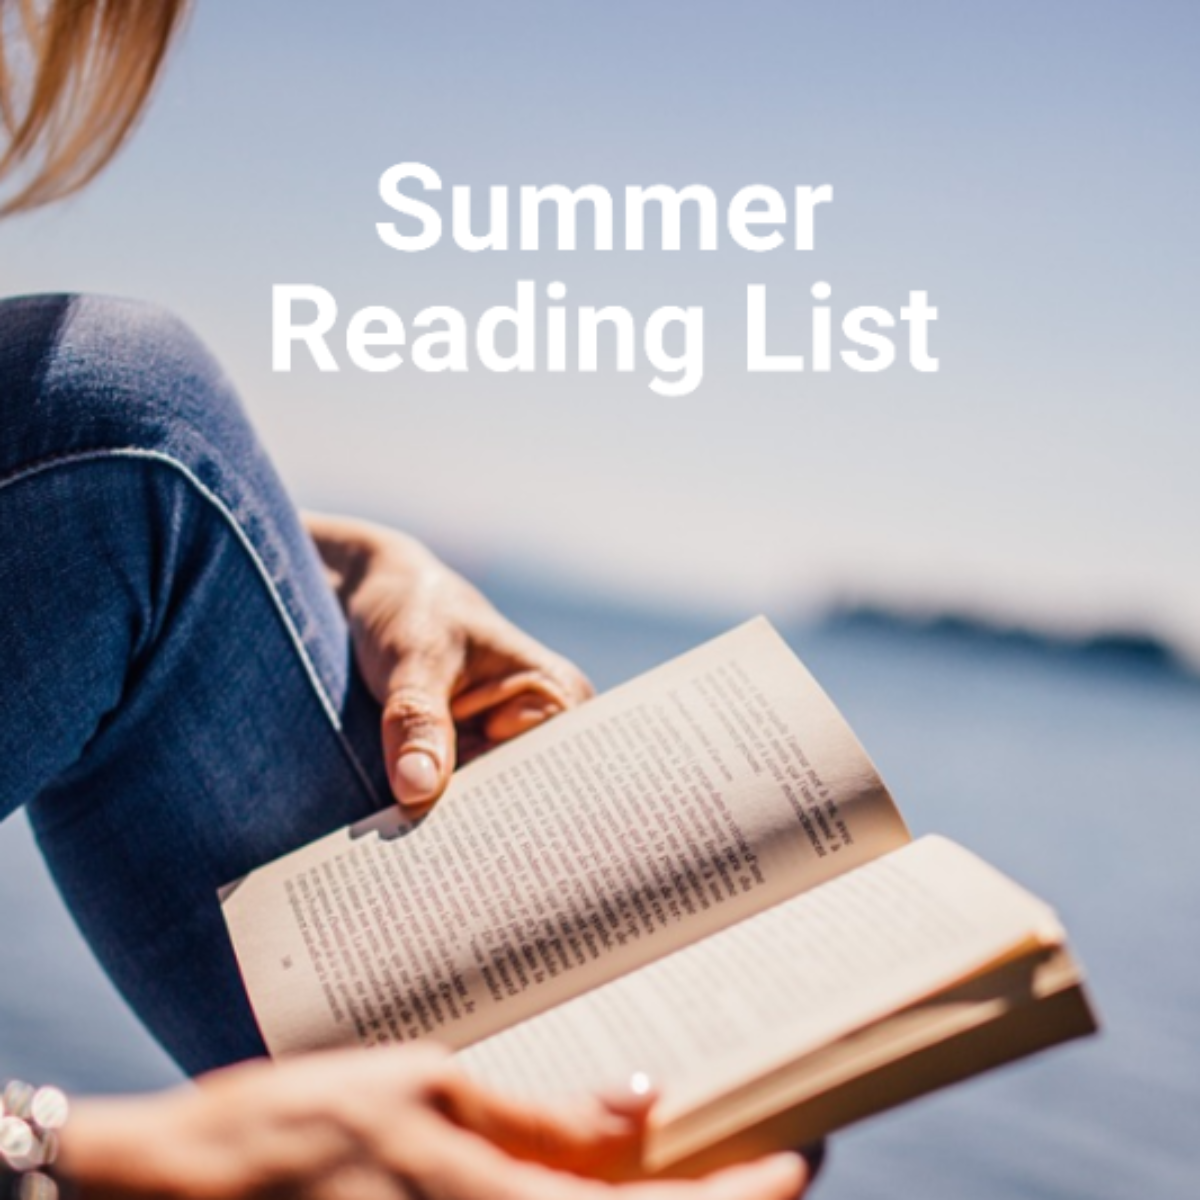 Summer Reading List Template